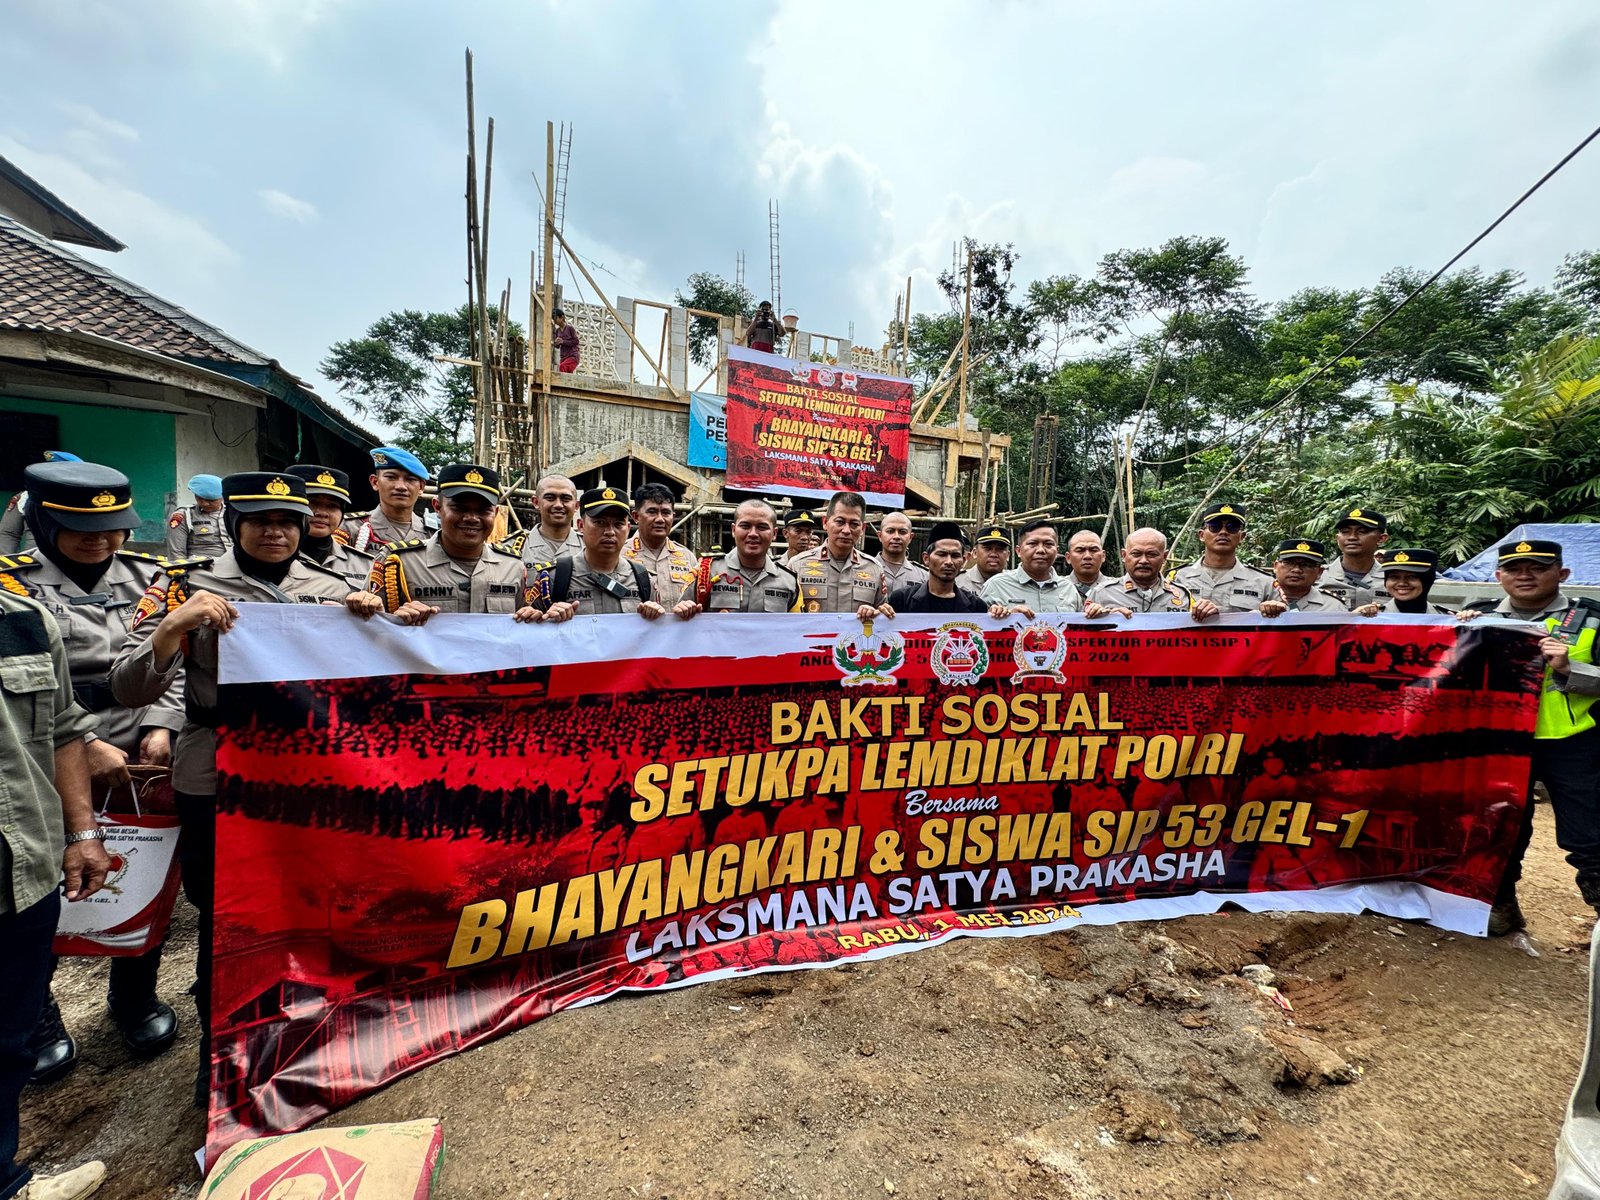 Bakti Sosial Setukpa Lemdiklat Polri untuk Peningkatan Pendidikan di Sukabumi